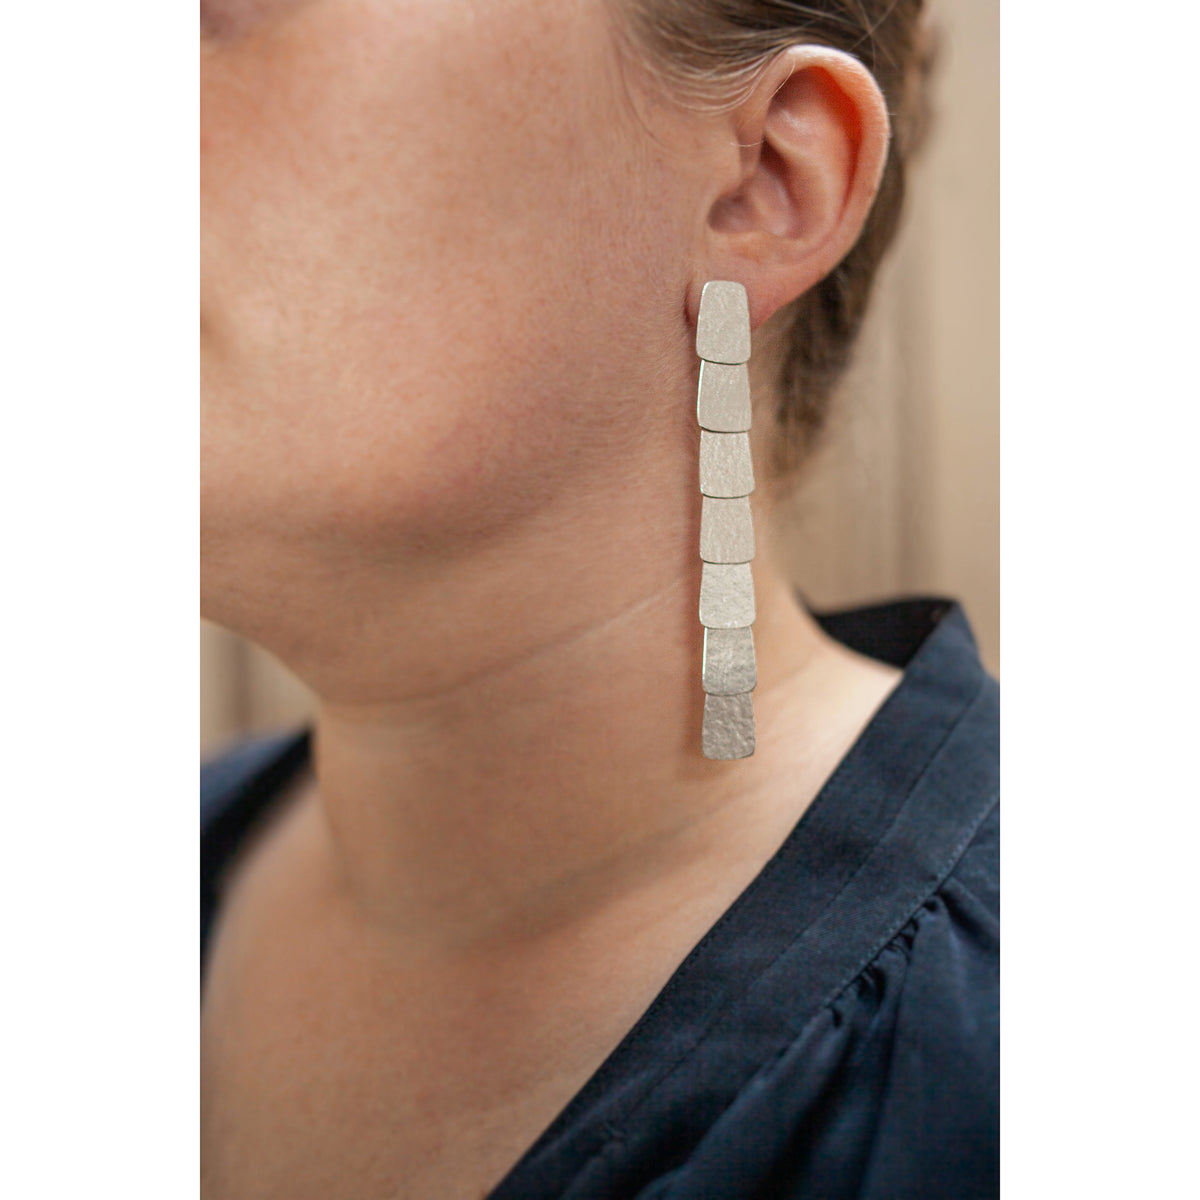 Seven tier silver earrings